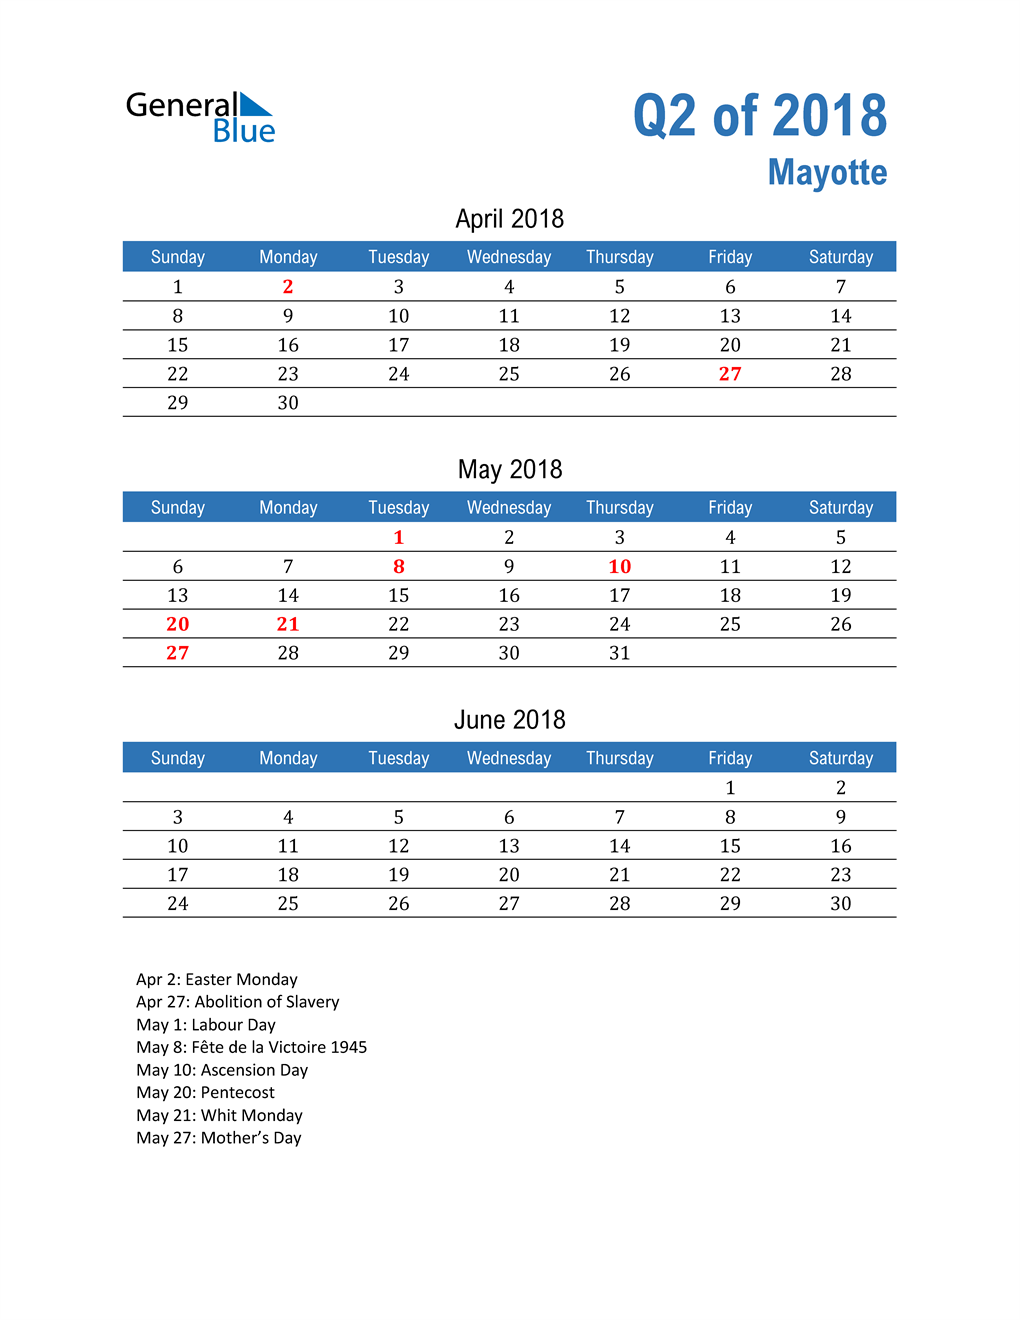  Mayotte 2018 Quarterly Calendar 